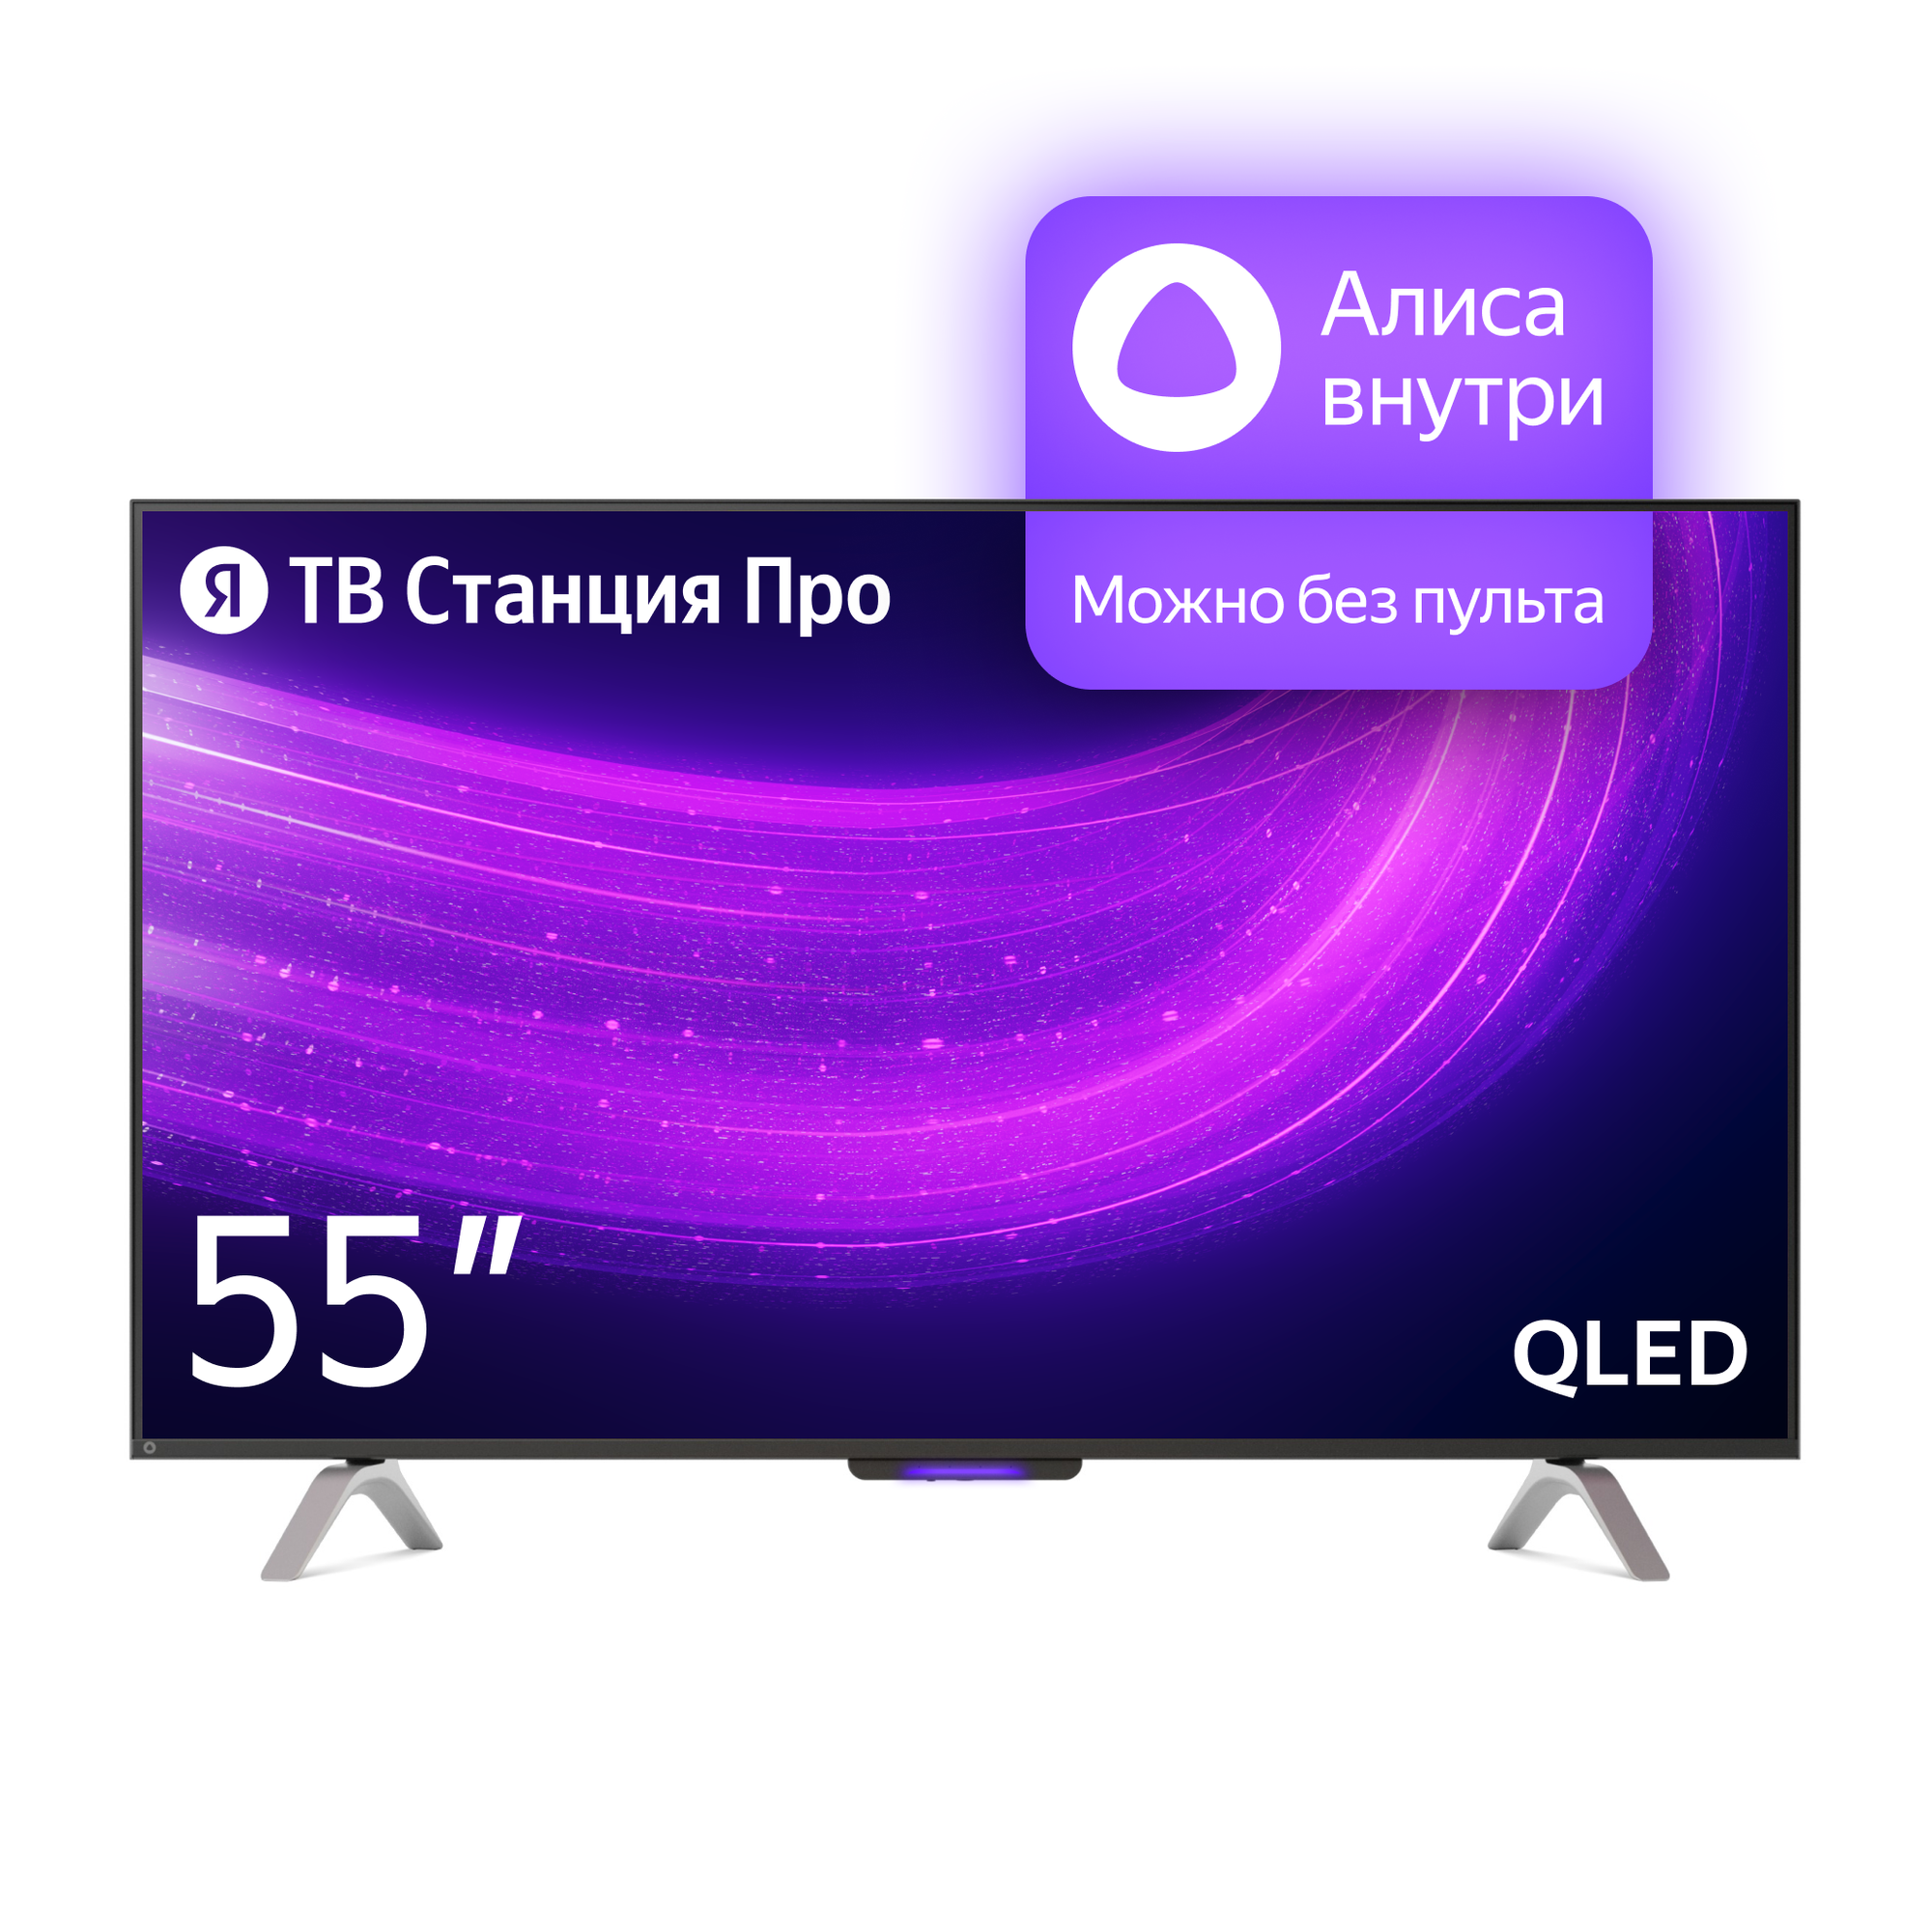 Яндекс ТВ Станция Про новый телевизор с Алисой 55’’ — купить в интернет-магазине по низкой цене на Яндекс Маркете